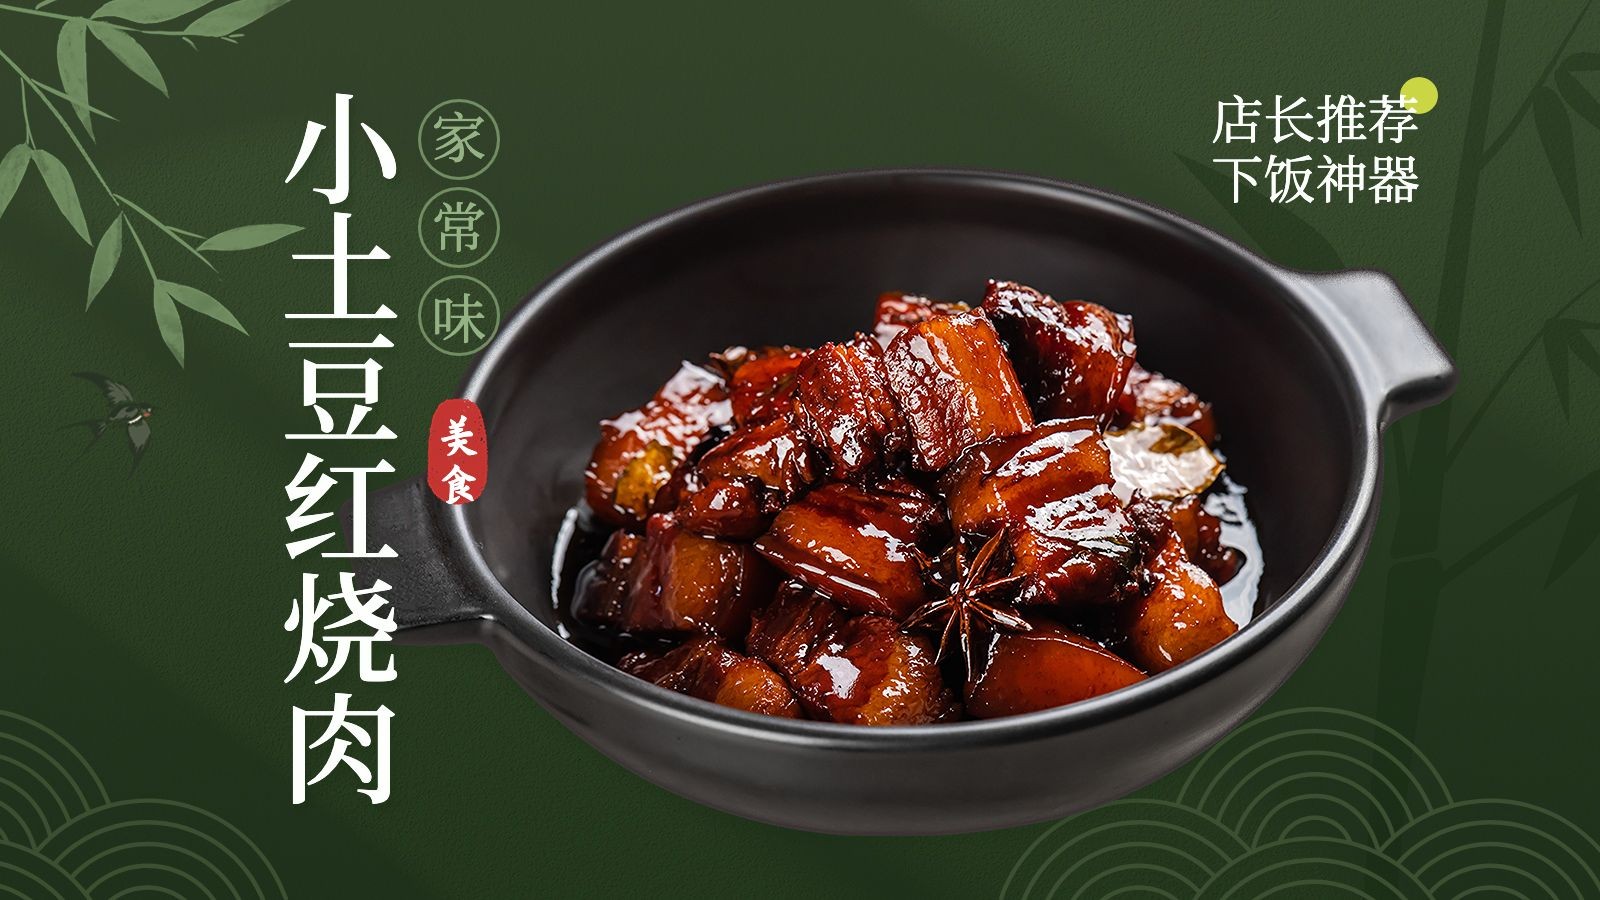 中国风竹林餐饮美食中餐抖音团购大众点评推荐菜招牌菜